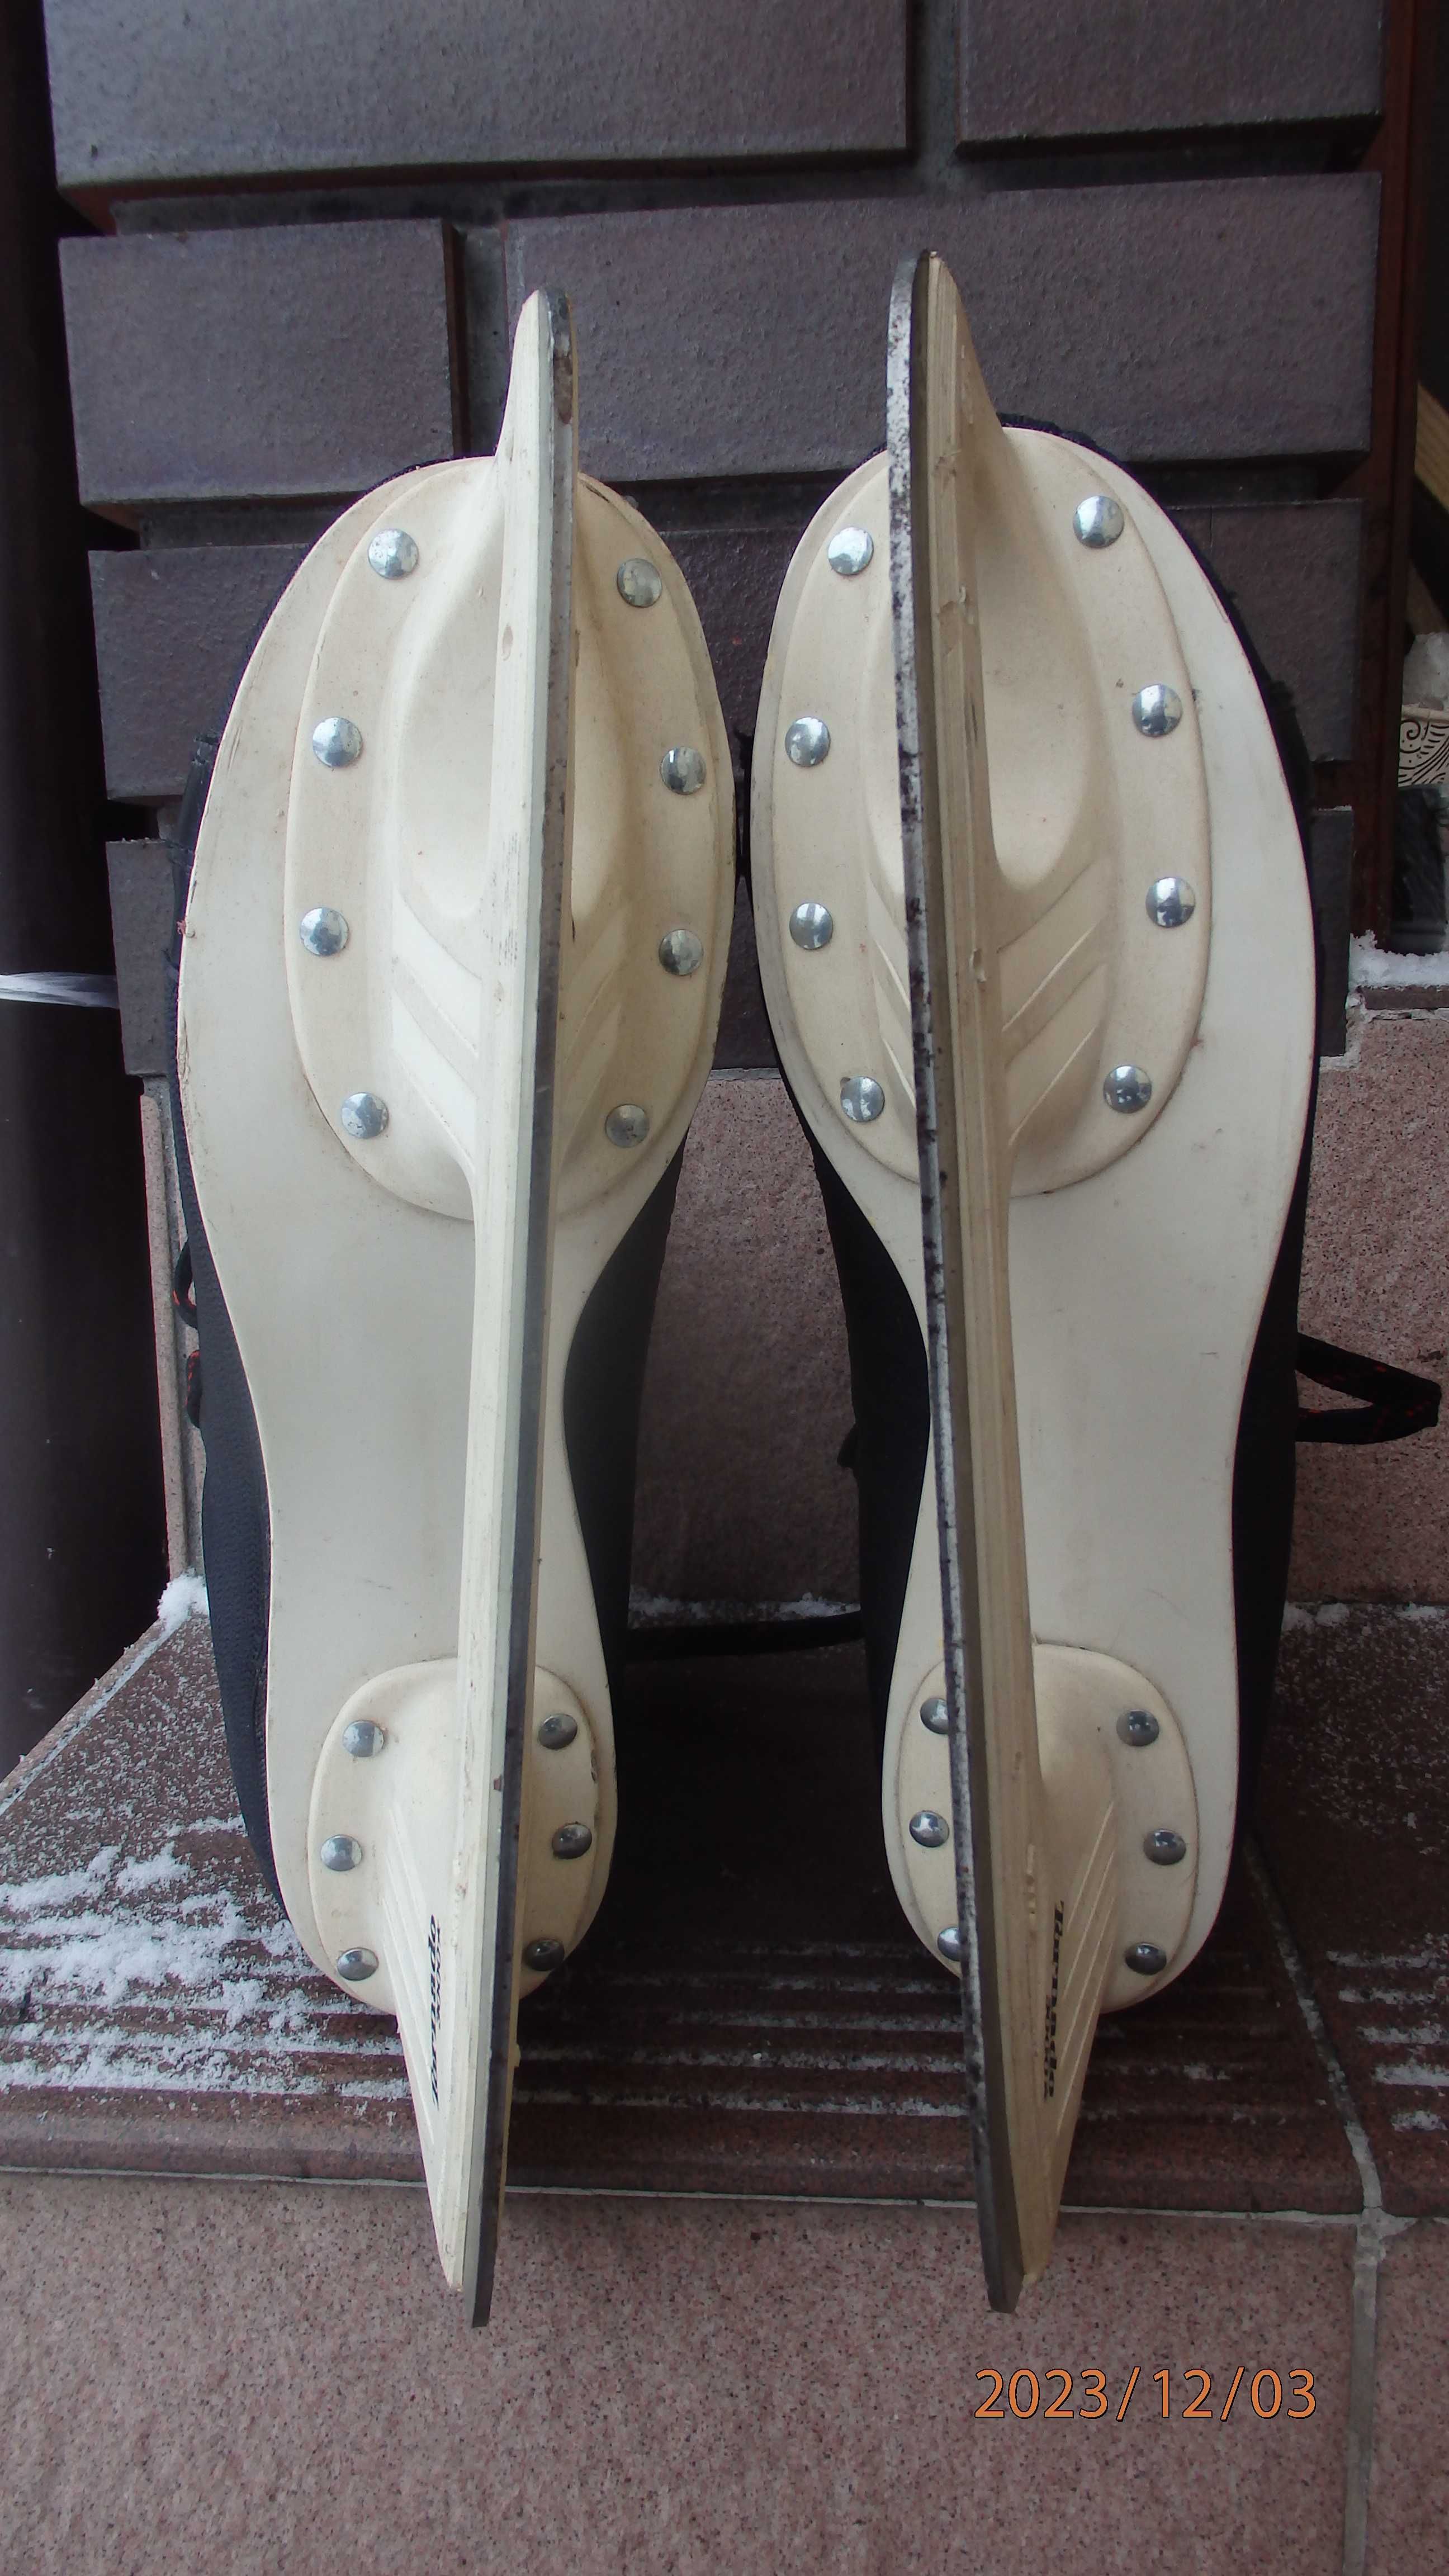 Buty zimowe męskie z łyżwami firmy Botas rozmiar 42.